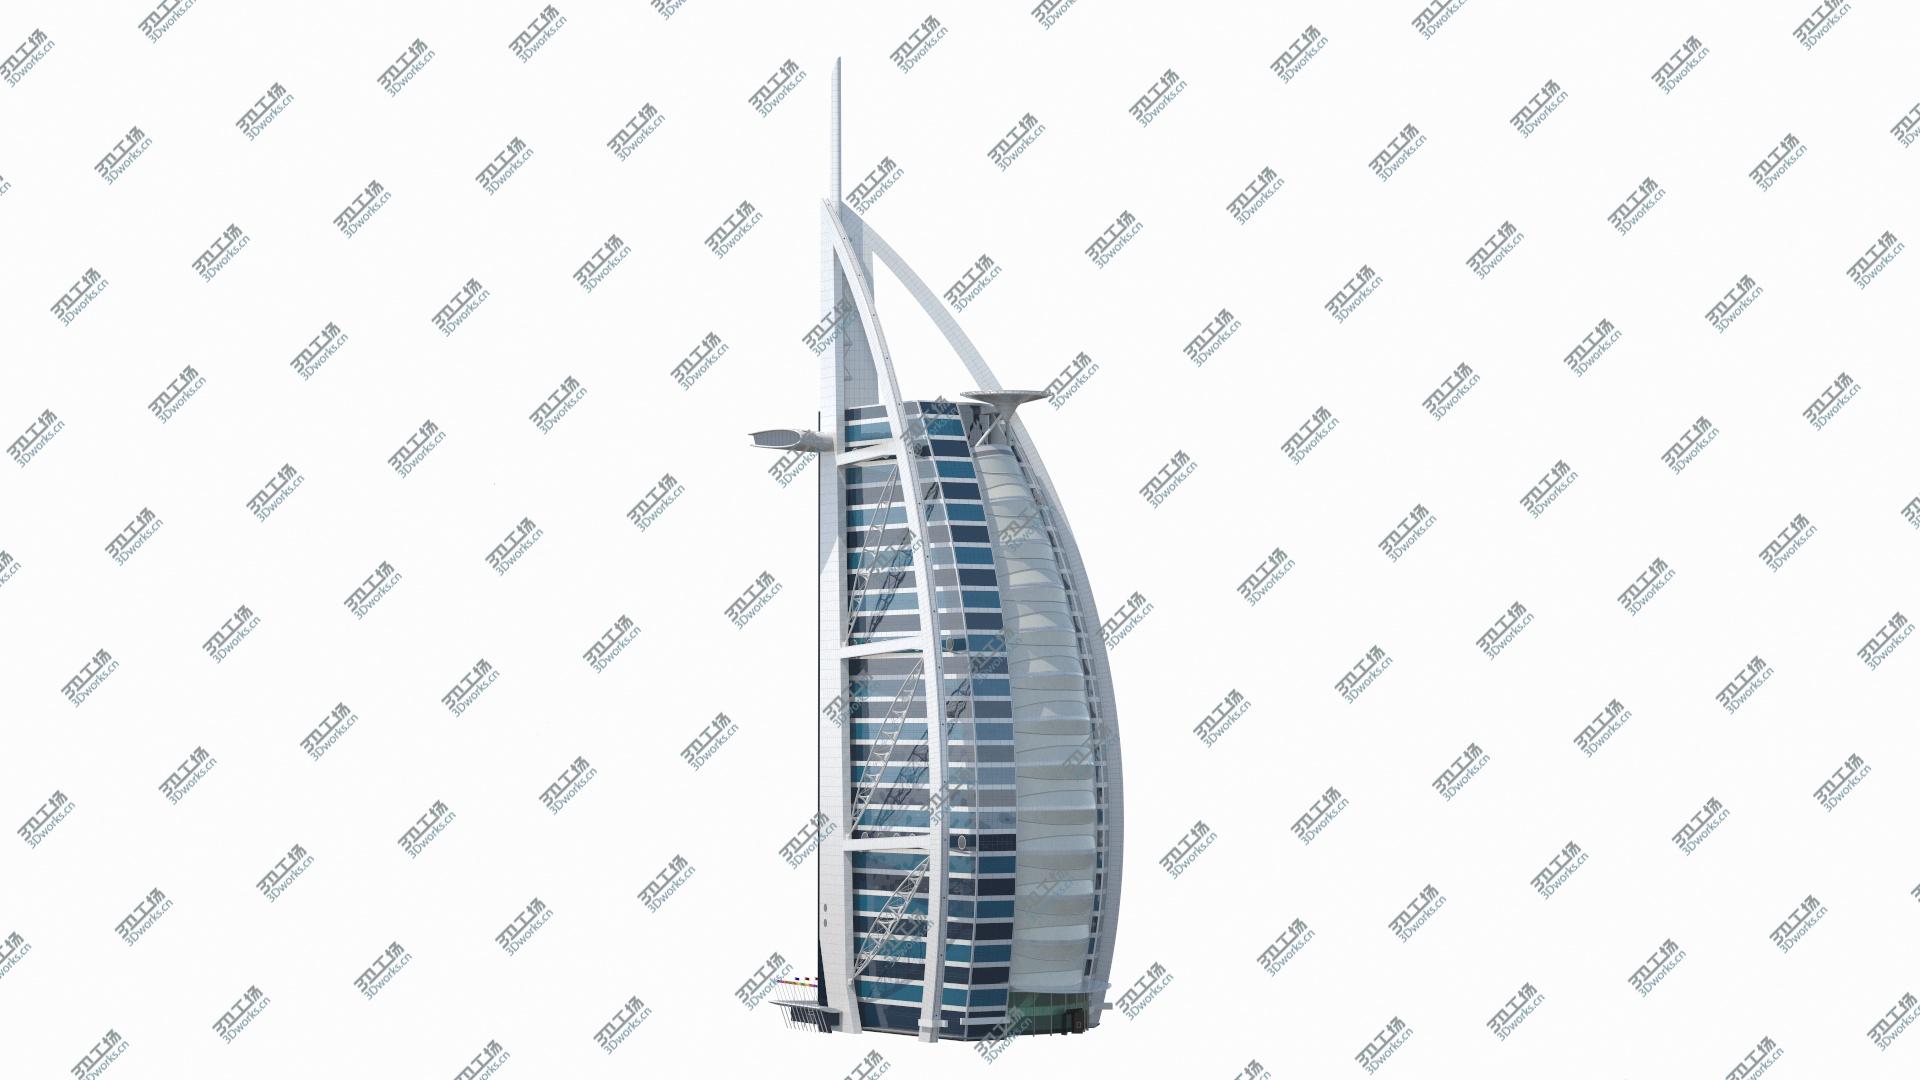 images/goods_img/202104092/3D Burj Al Arab Tower/3.jpg